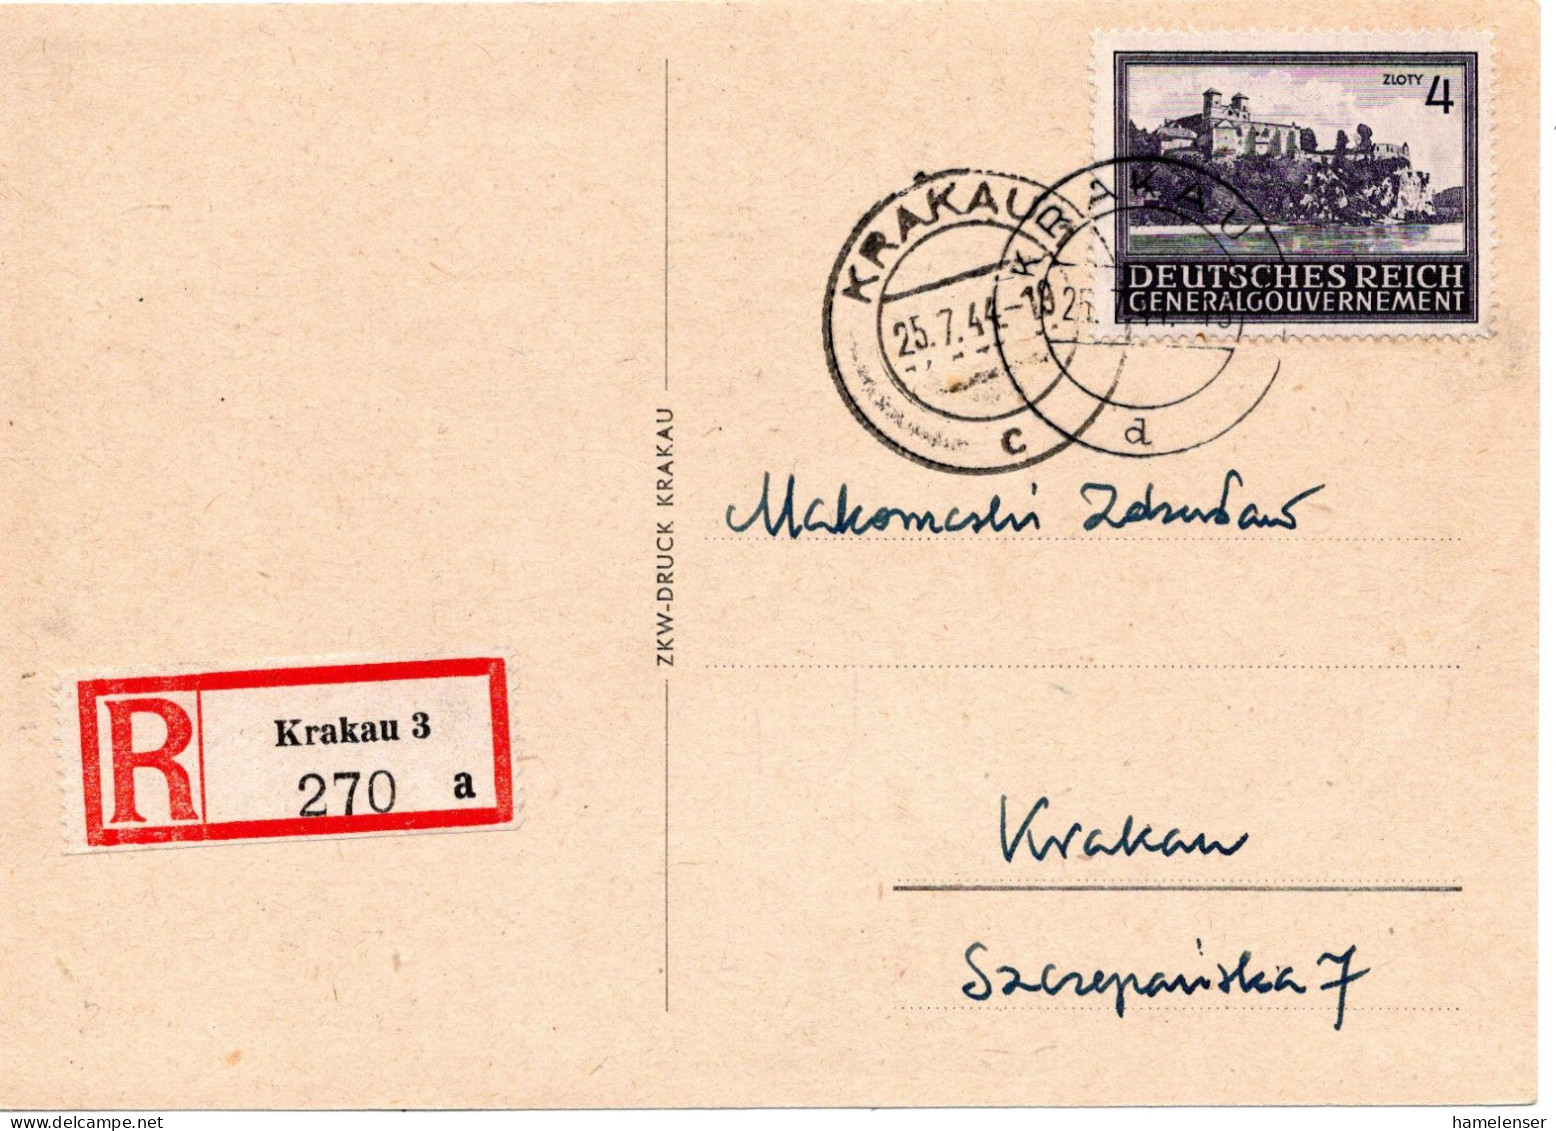 61154 - Deutsches Reich / Generalgouvernement - 1944 - Zl.4 Bauwerke EF A OrtsR-AnsKte KRAKAU - Generalregierung